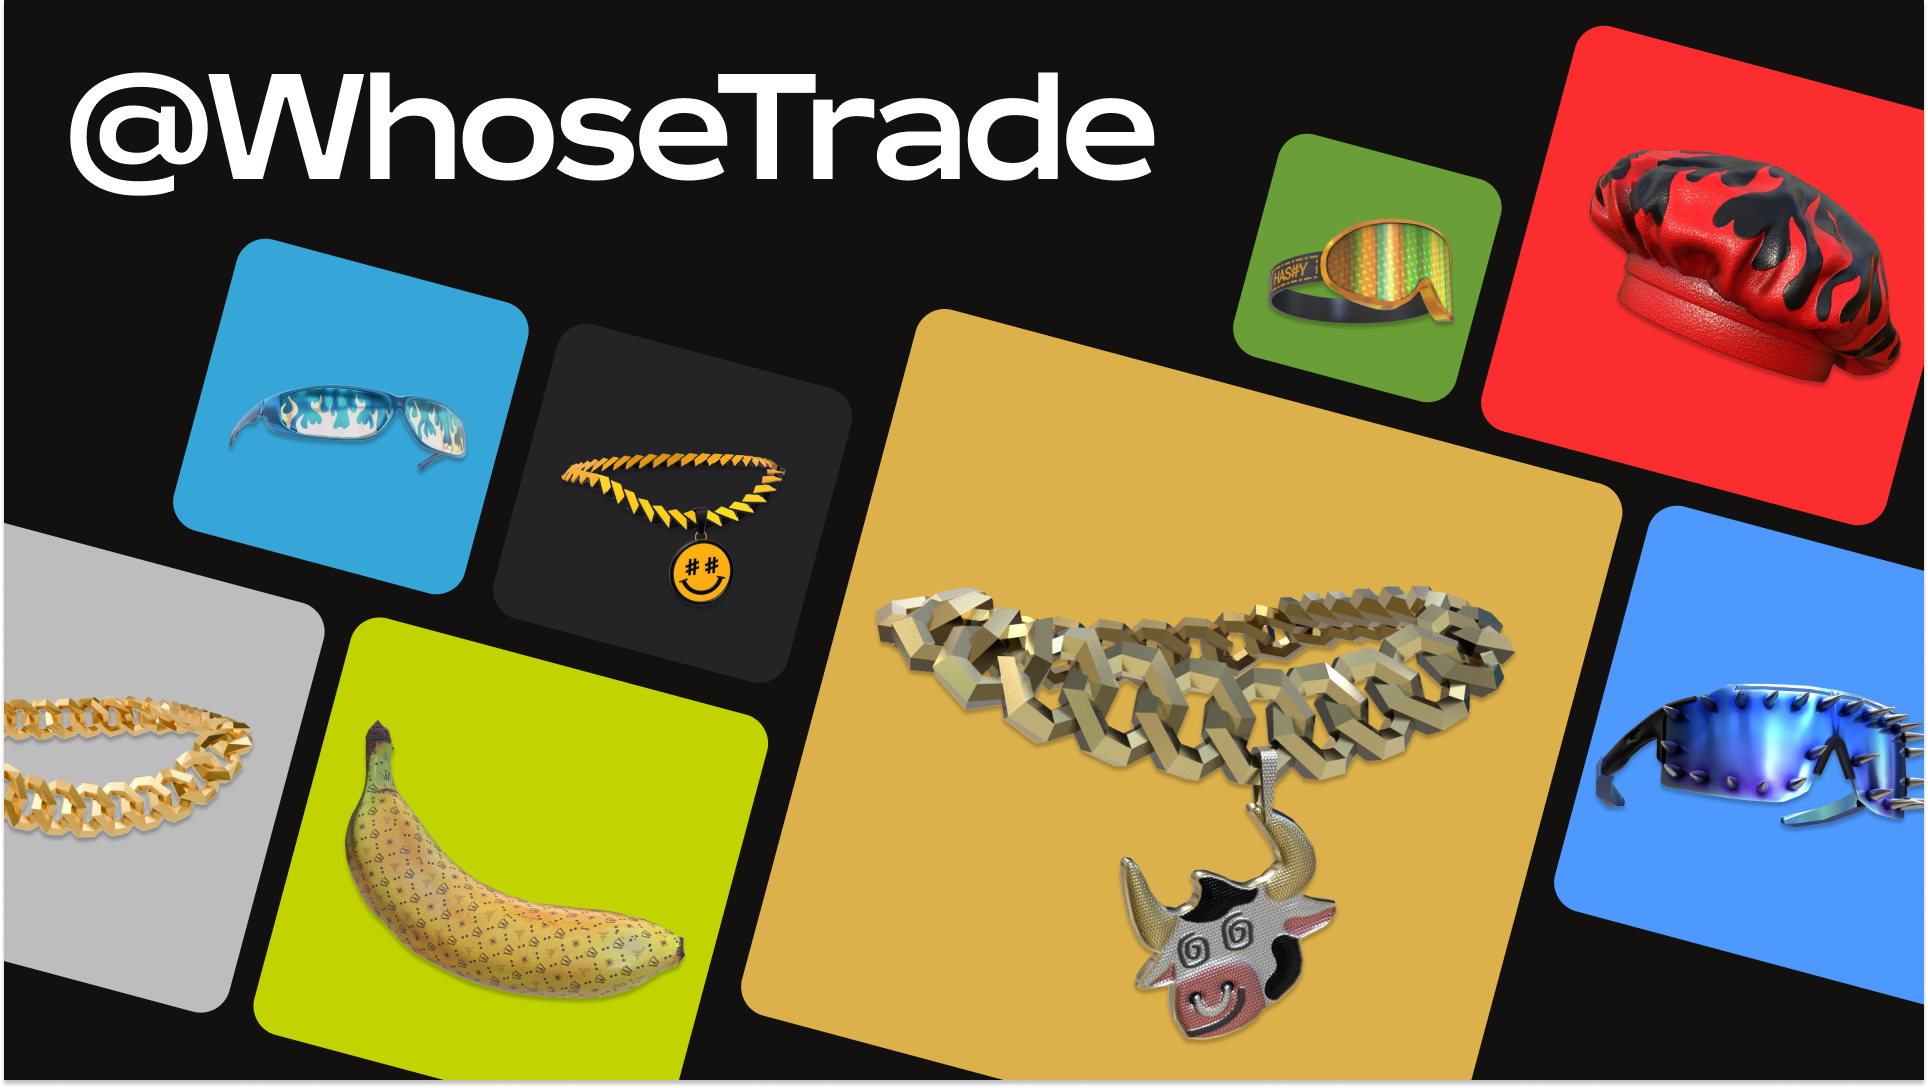 WhoseTrade با برندهایی مانند Monstercat و Nivea همکاری کرد و ده ها مورد ایجاد کرد که ده ها هزار بار فروخته شد.